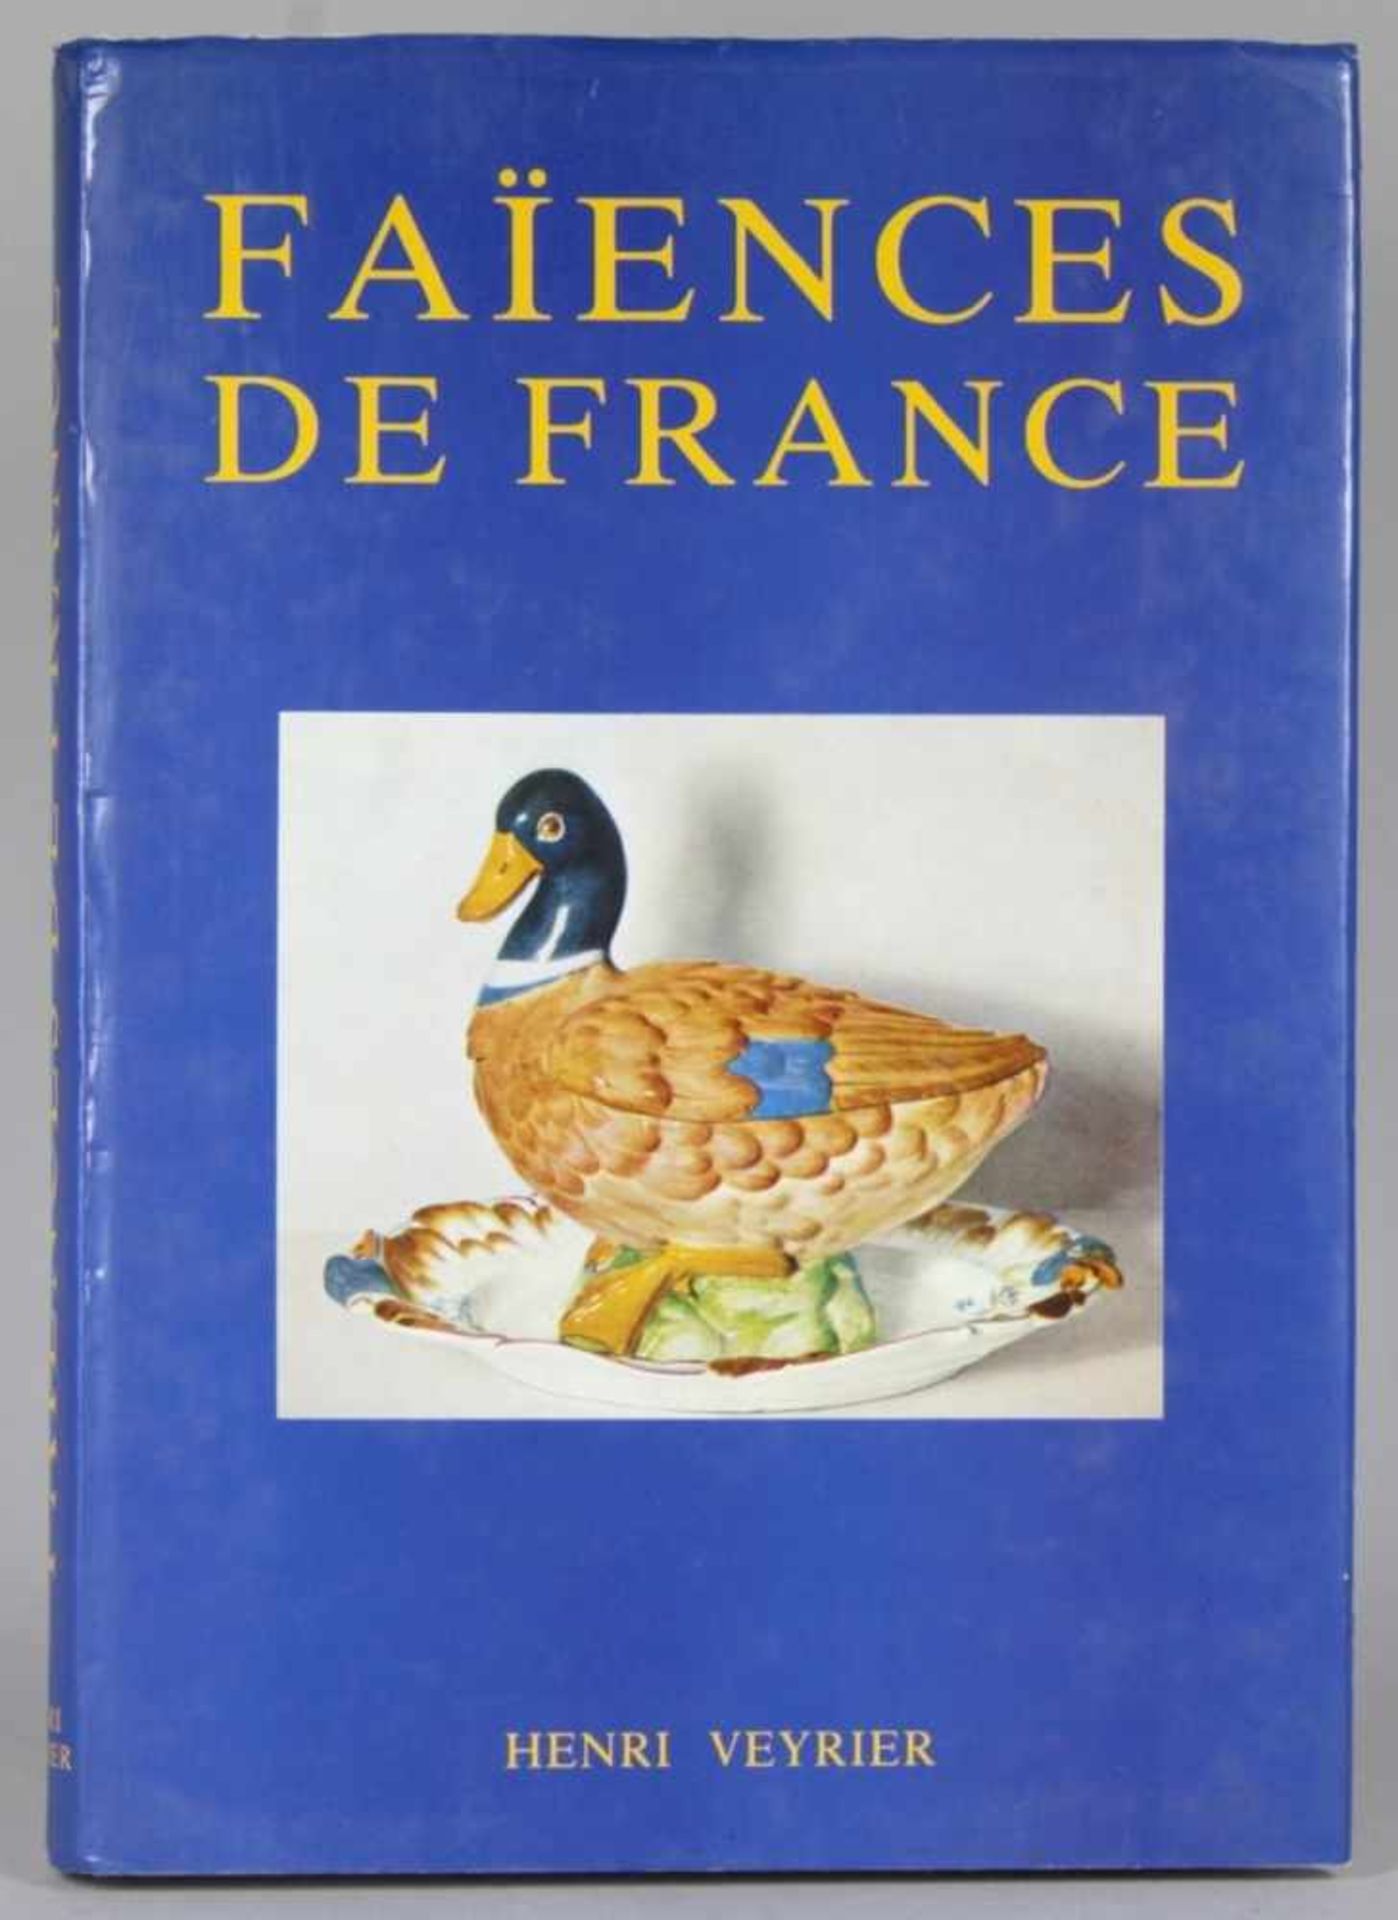 Buch, Faiences de France, H. Veyrier, Paris, 1986, in französischer Sprache geschrieben,guter E